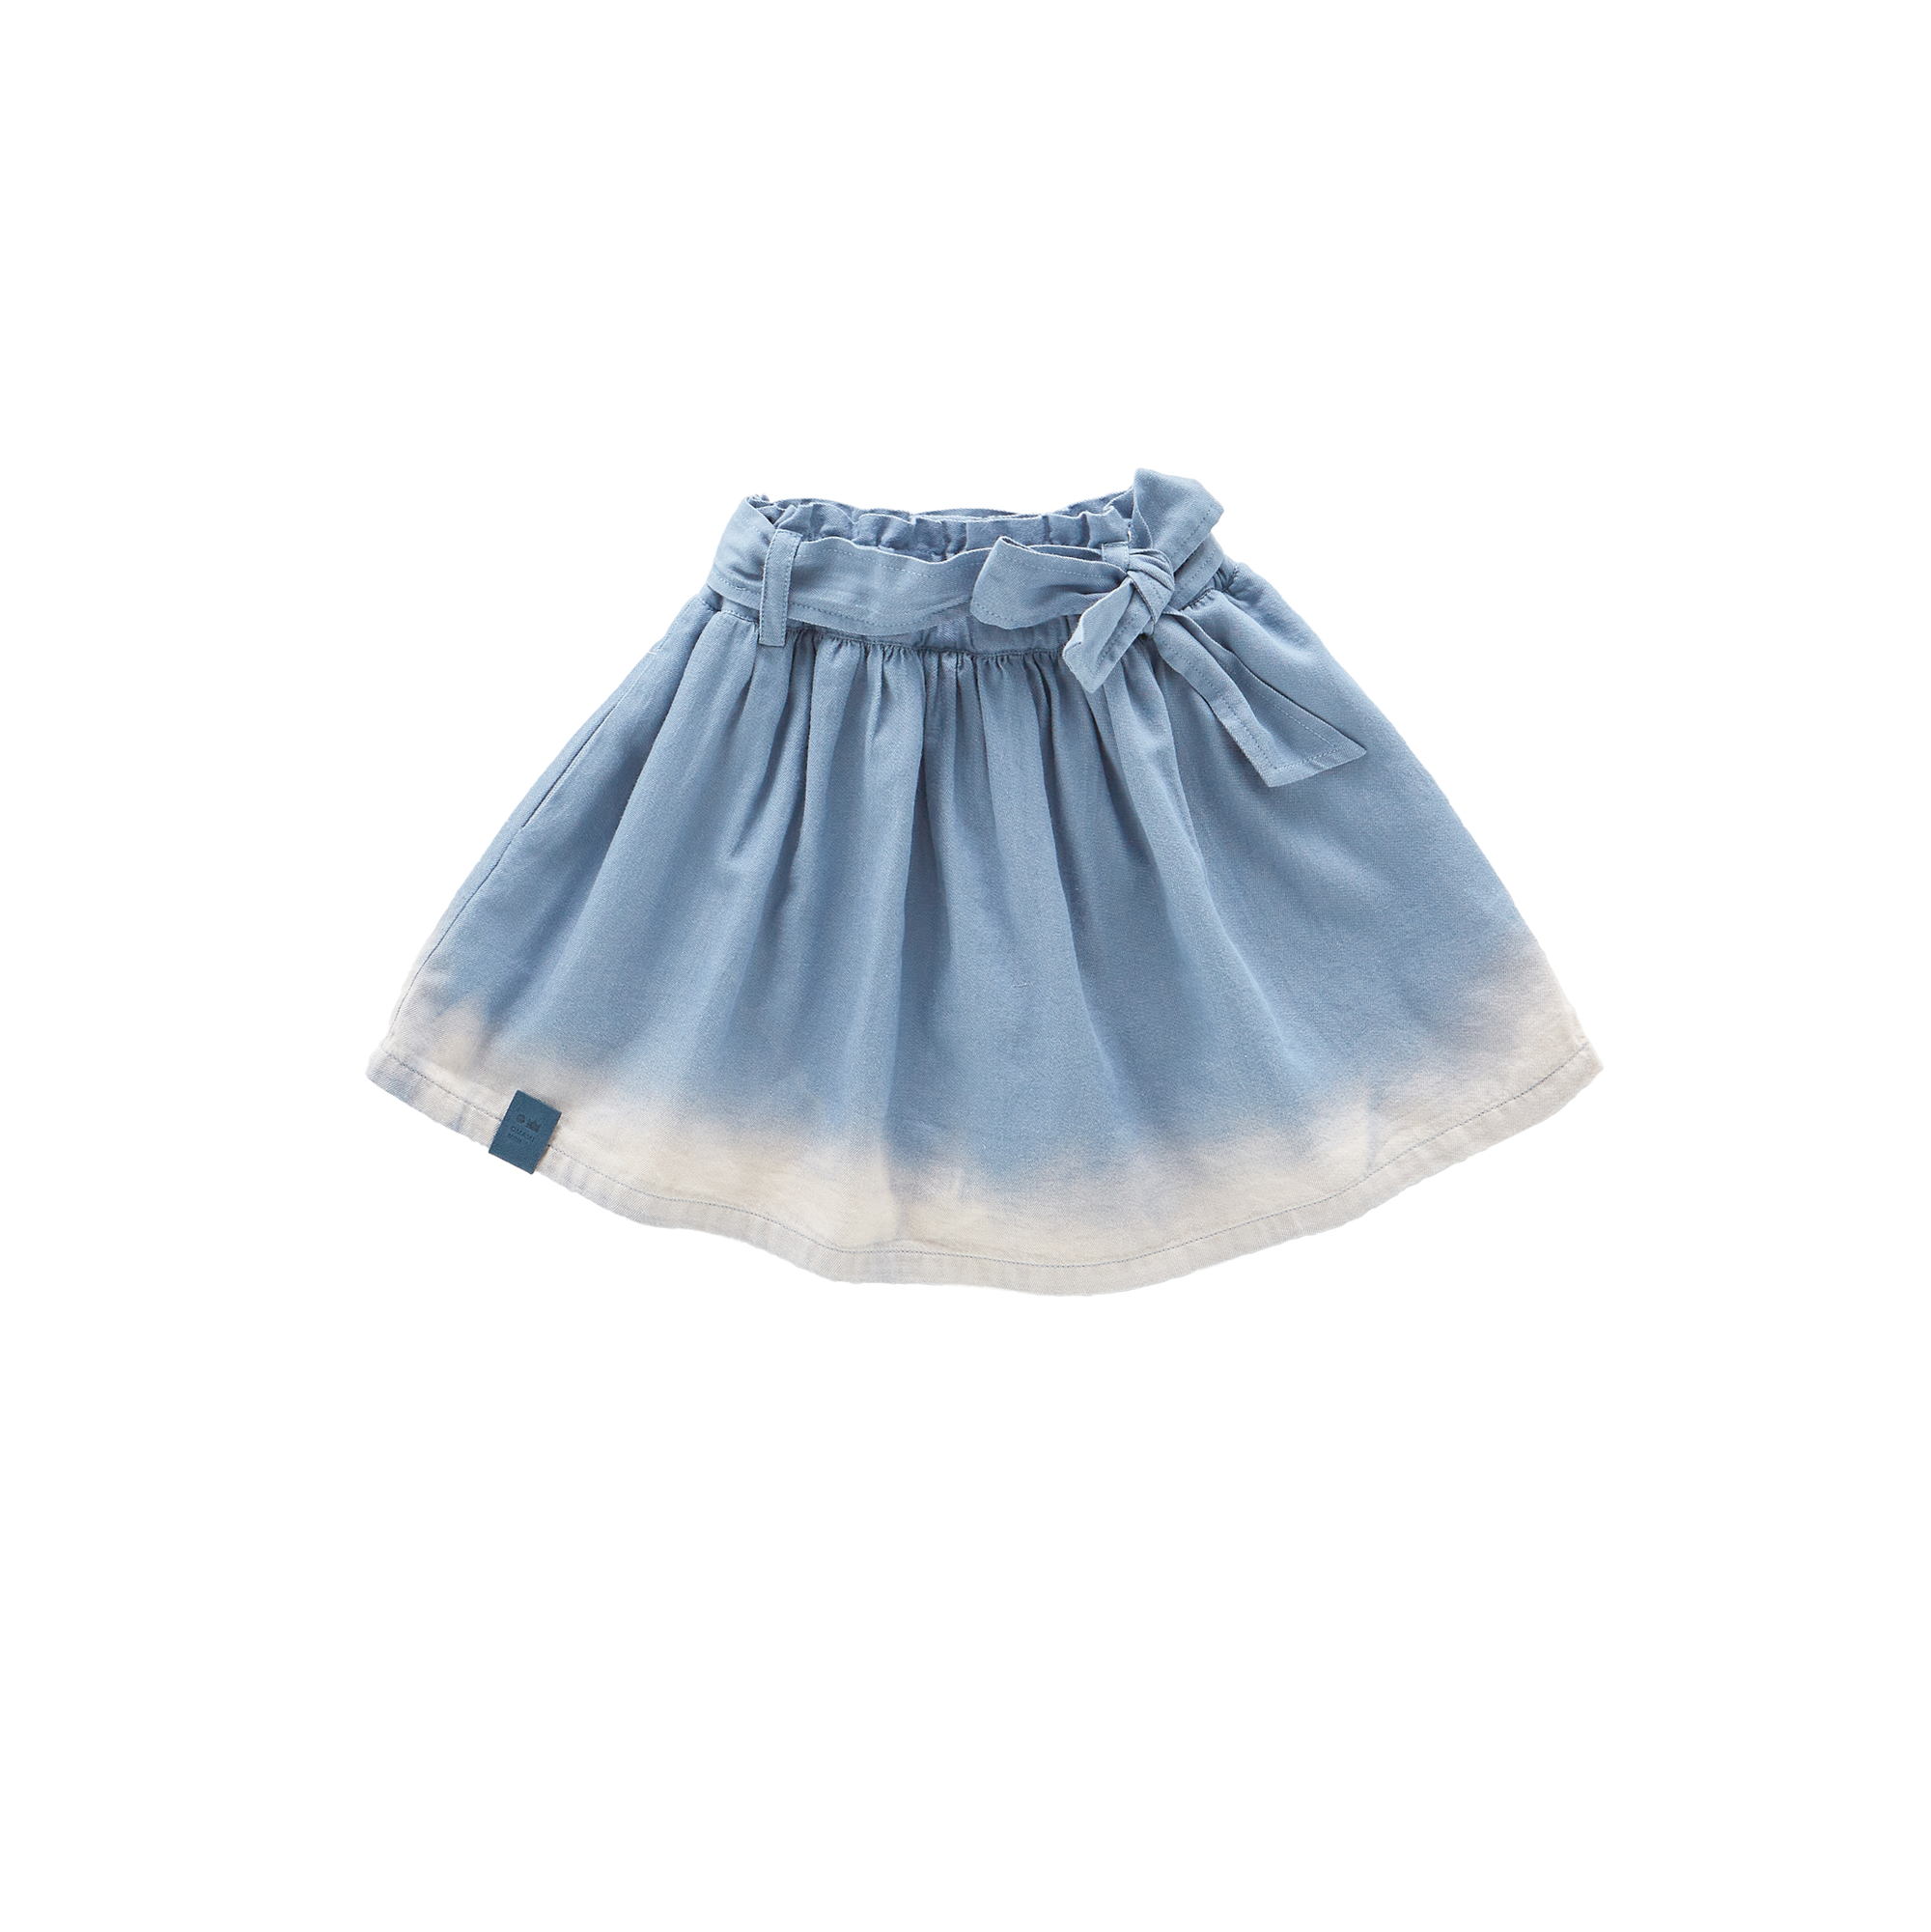 Denim Skirt with Belt - Light Blue Chambray